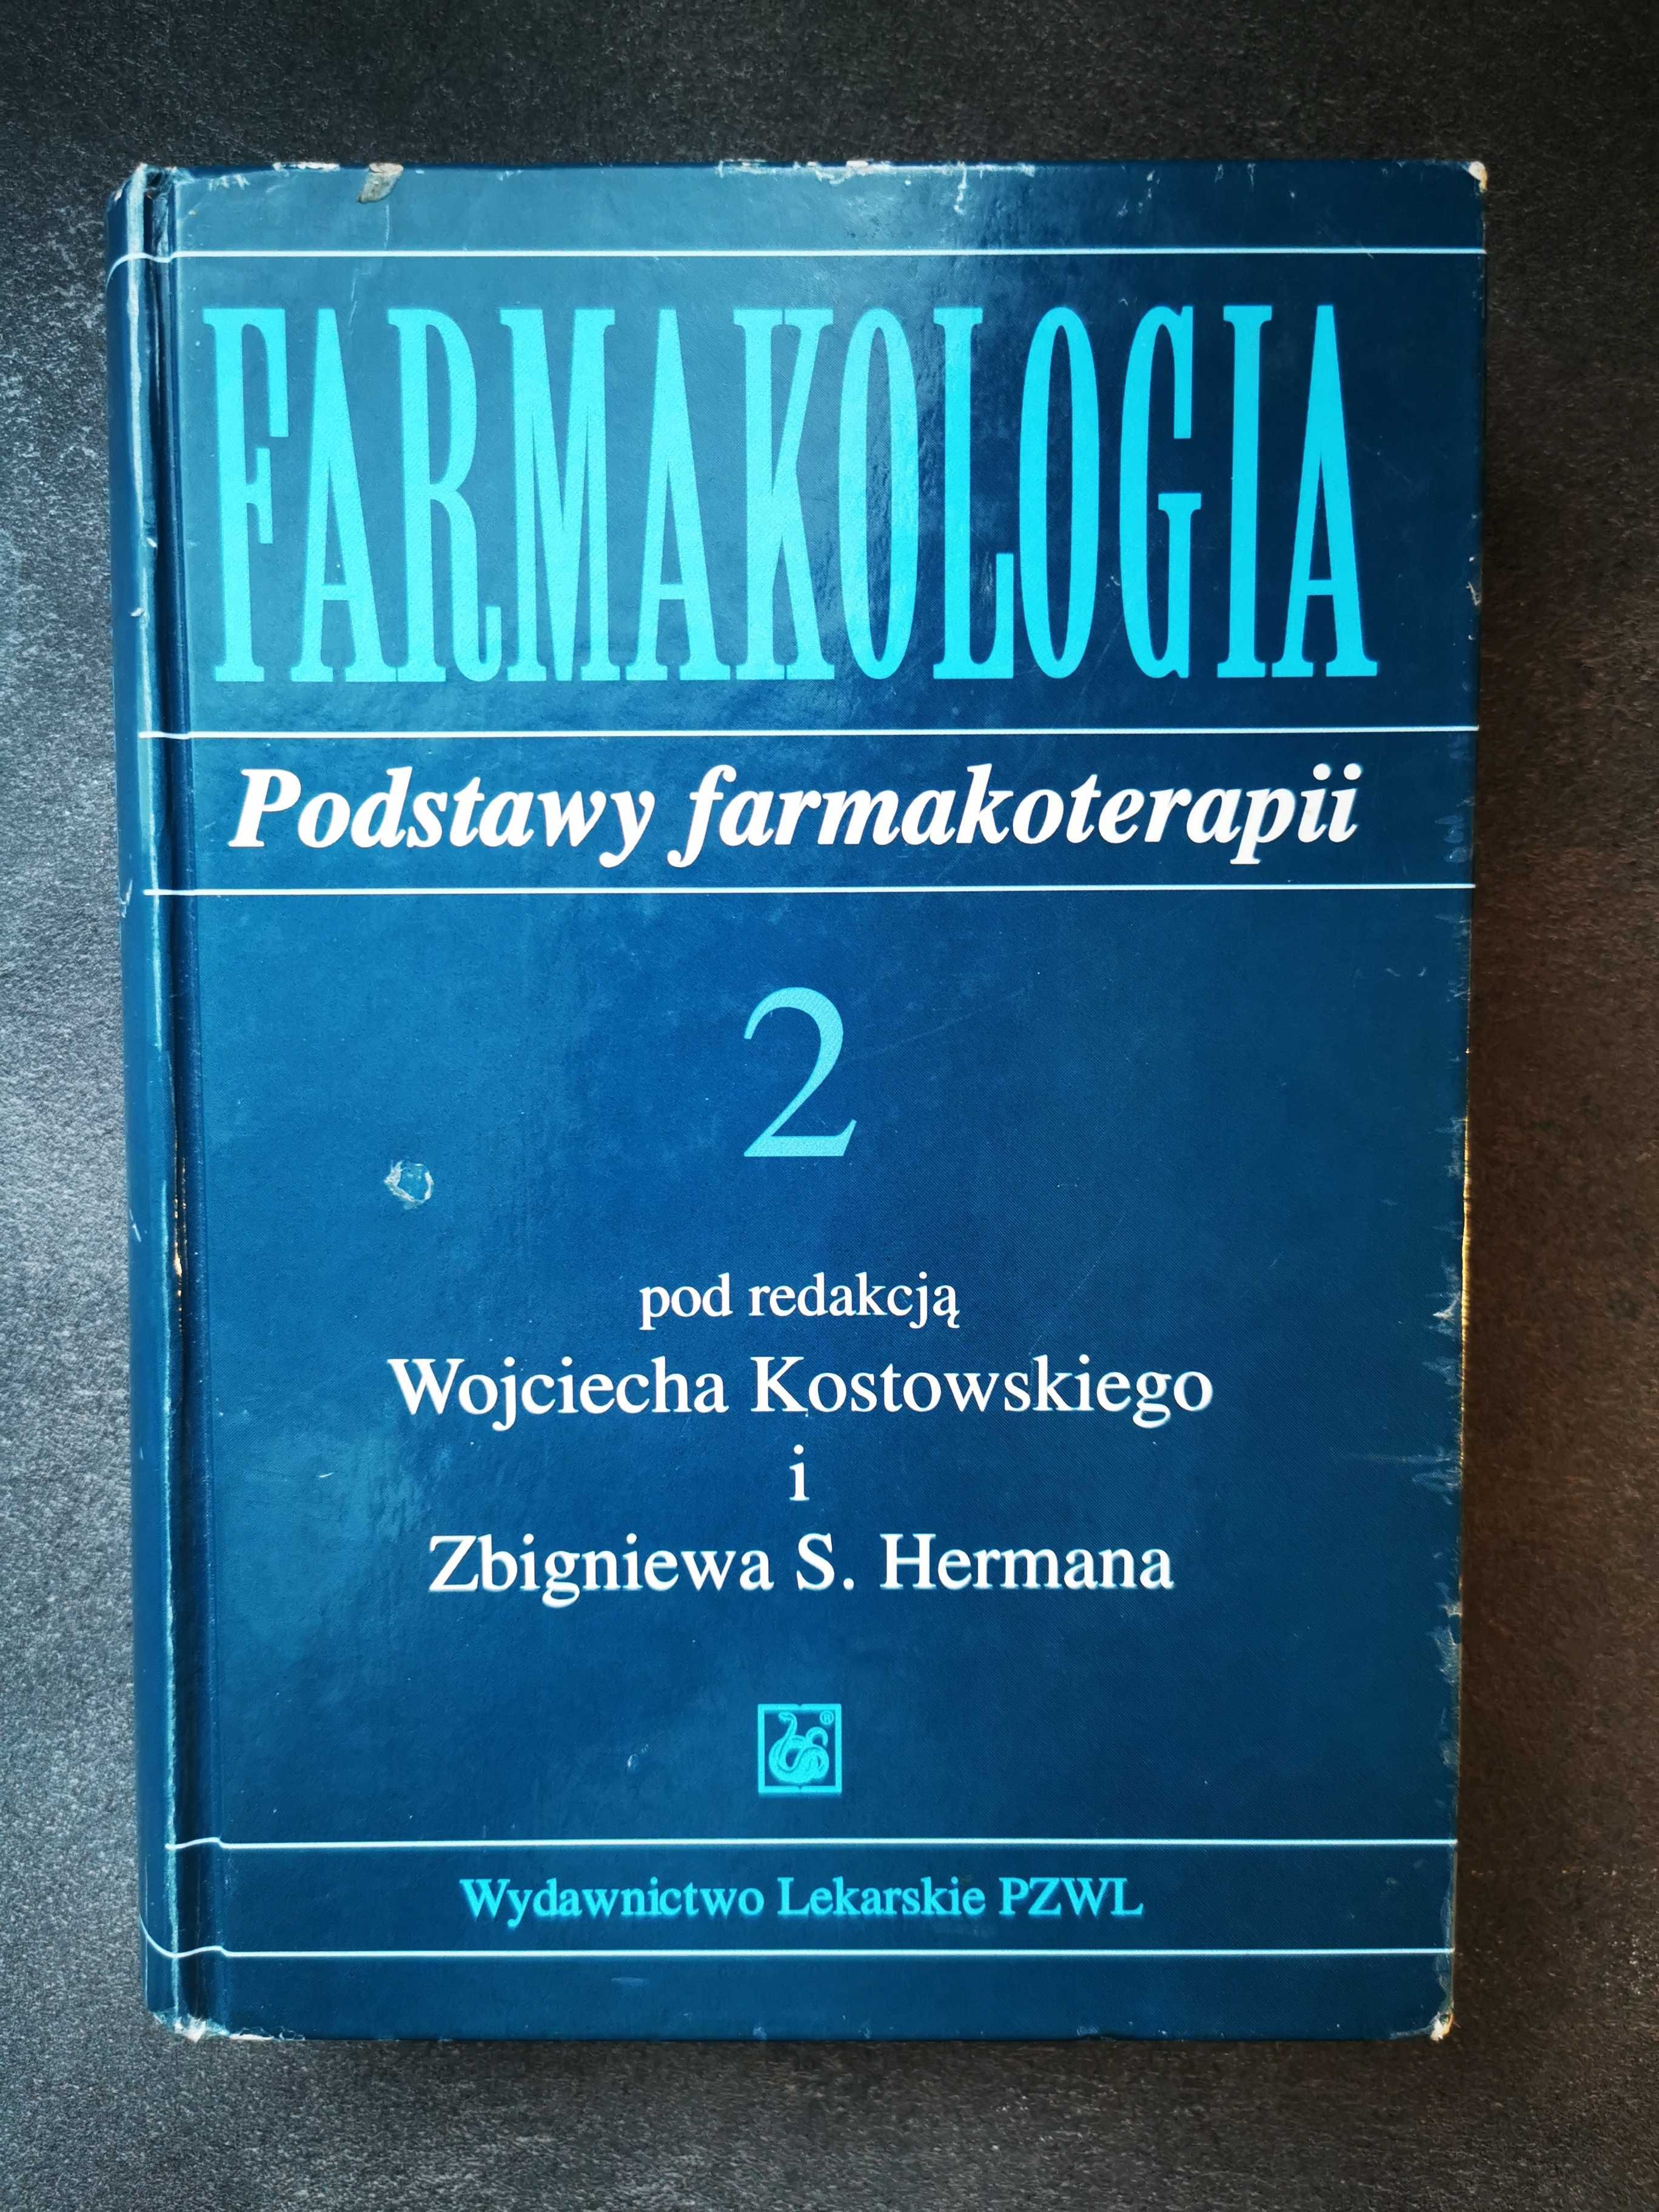 Farmakologia Podstawy Farmakoterapii TOM 2, autorzy: Kostowski, Herman